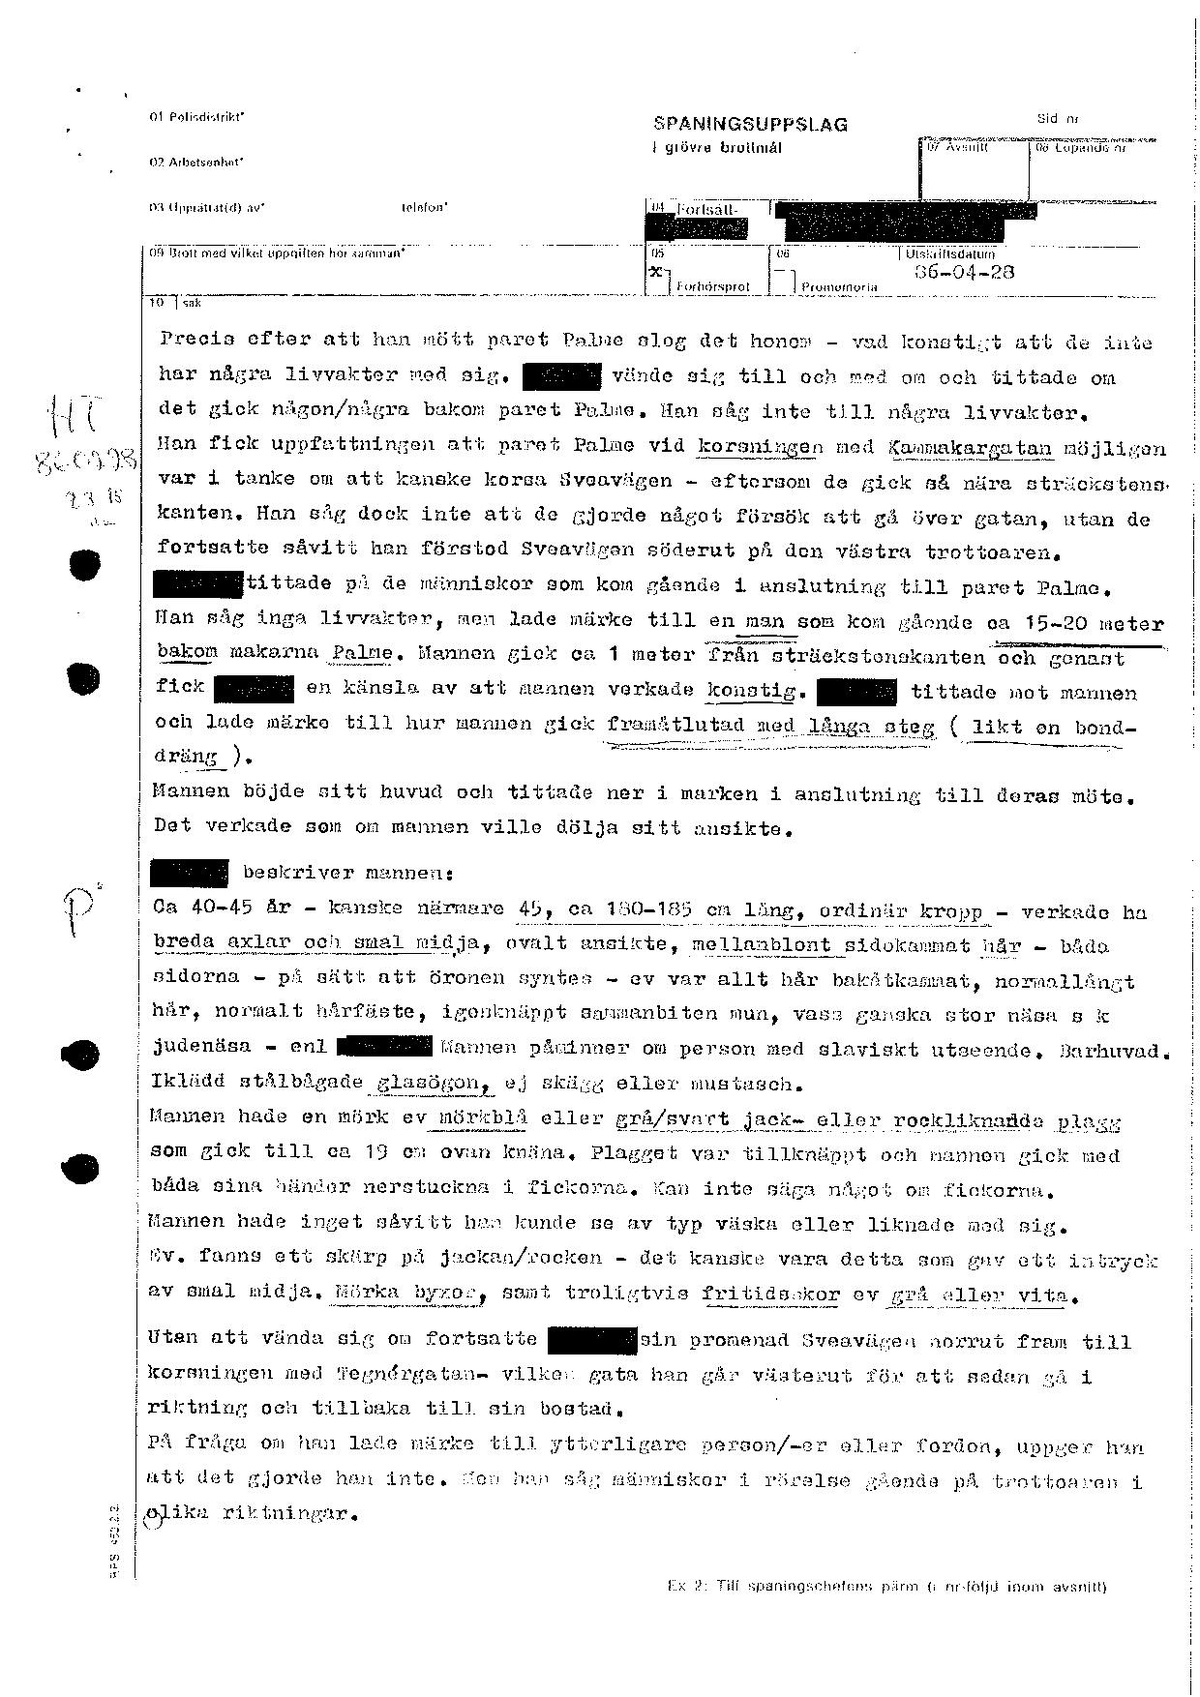 Pol-1986-04-28 E4426-00-A Kompl förhör med Alf Lundin Mindre maskat.pdf